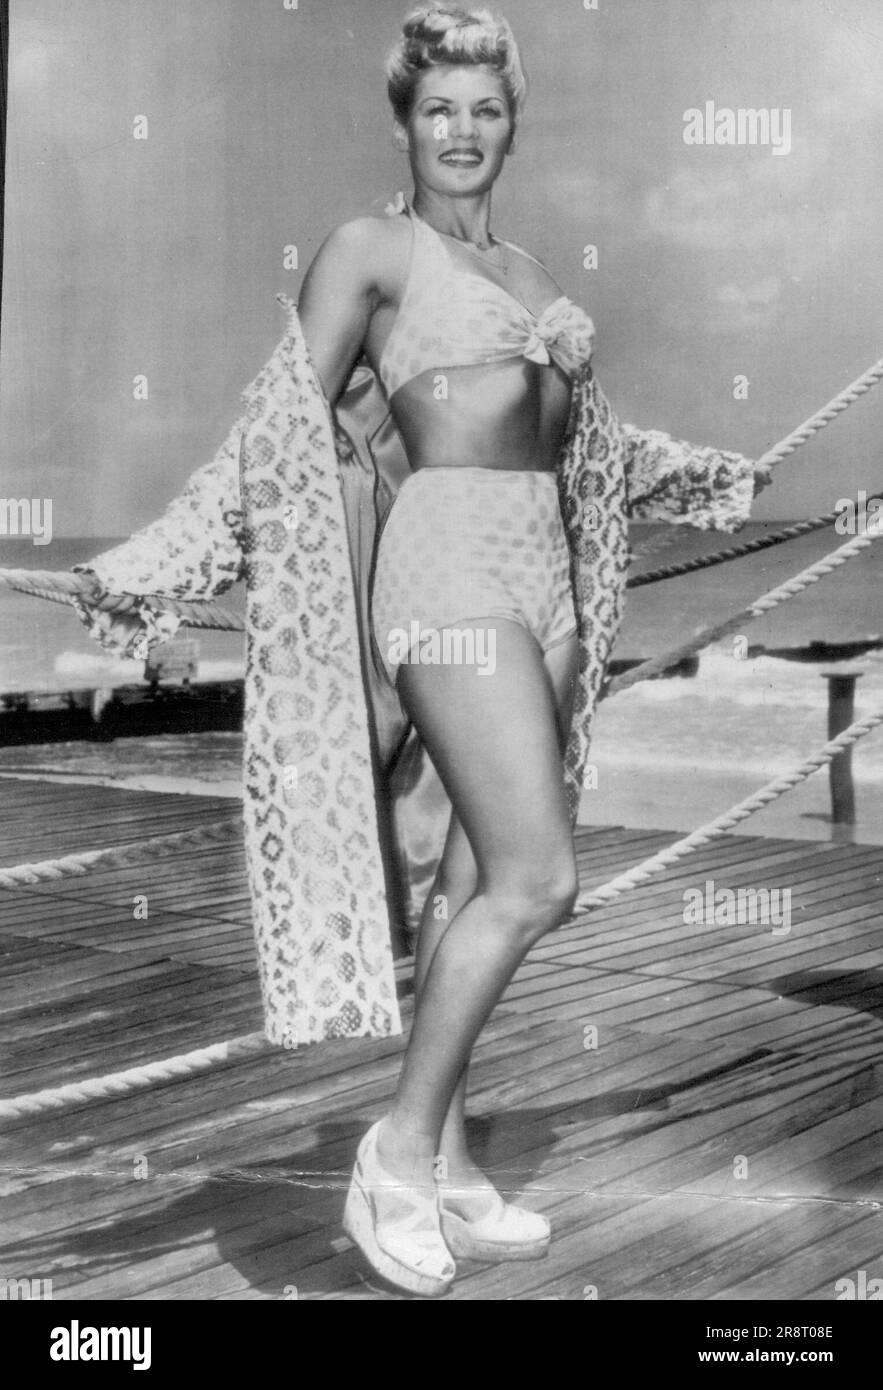 "Gute-Wille-Augen" -- Tilda Thamar, sensationelle argentinische Filmschauspielerin, die Gräfin Toprani im Privatleben ist, sagte, sie kombiniere Vergnügen mit einer guten-Wille-Reise, als sie gestern hier ankam. Während ihres Aufenthalts wird sie New York und Hollywood besuchen, hat aber keine Ambitionen, in amerikanischen Filmen zu spielen. 25. April 1946. (Foto von AP Wirephoto). Stockfoto